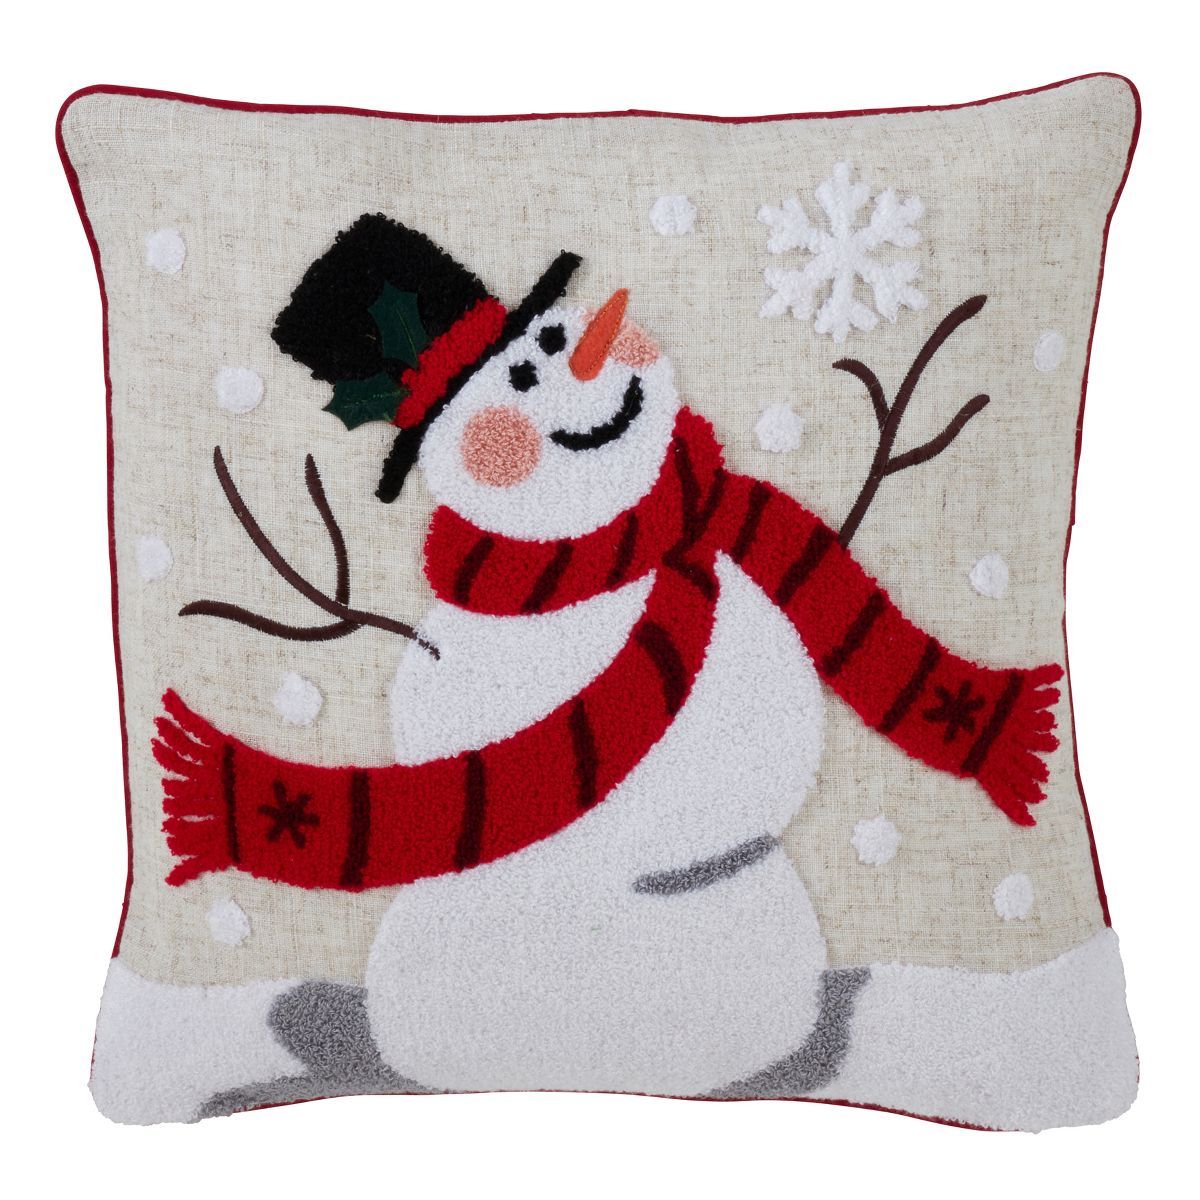 16"x16" Jolly Snowman Square Throw Pillow Tan - Saro Lifestyle | Target